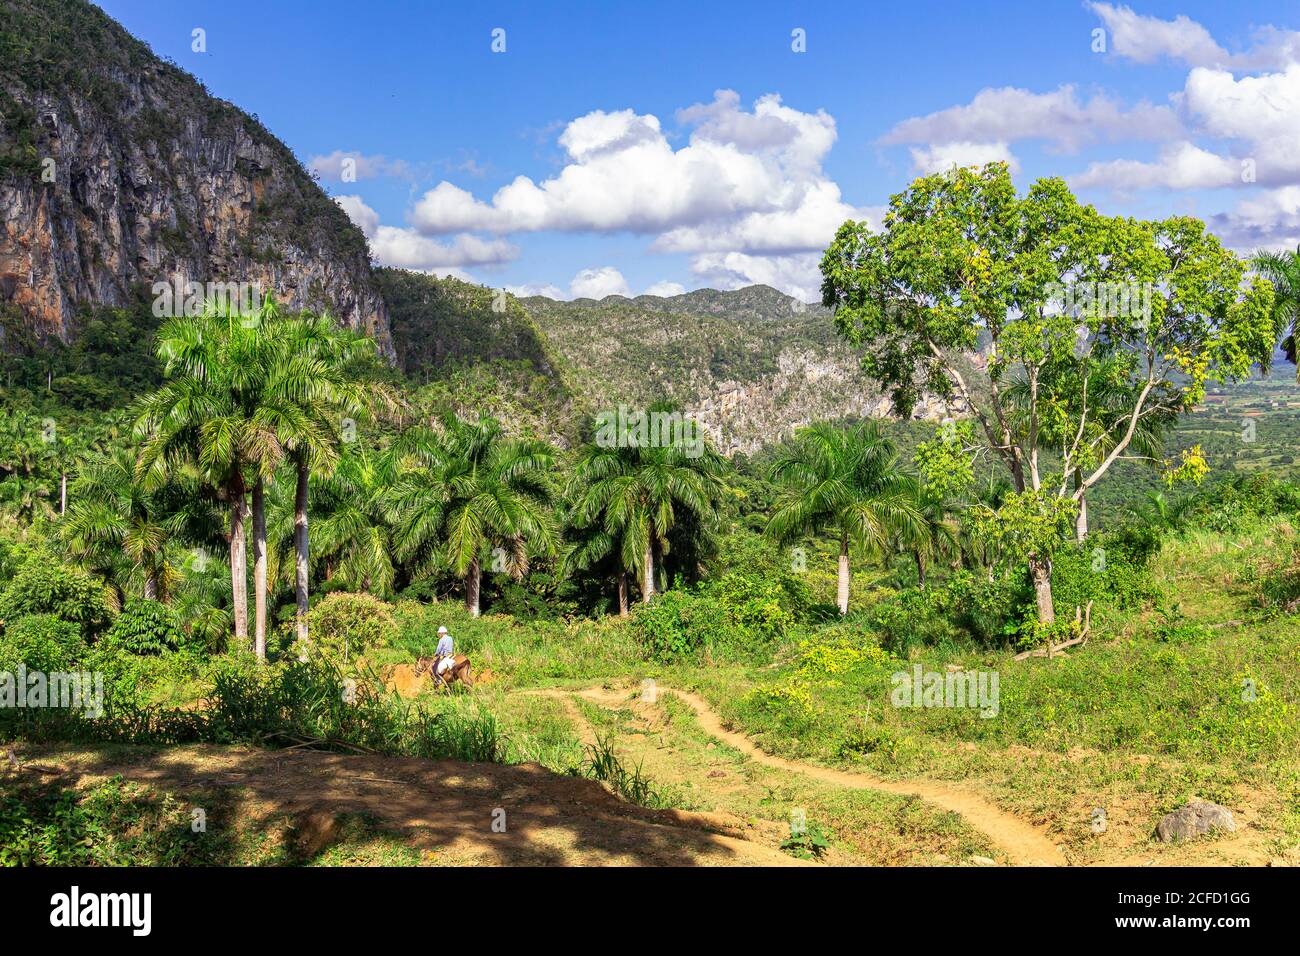 View from the 'Los Aquaticos' viewpoint over the Vinales valley ('Valle de Vinales'), Pinar del Rio province, Cuba Stock Photo